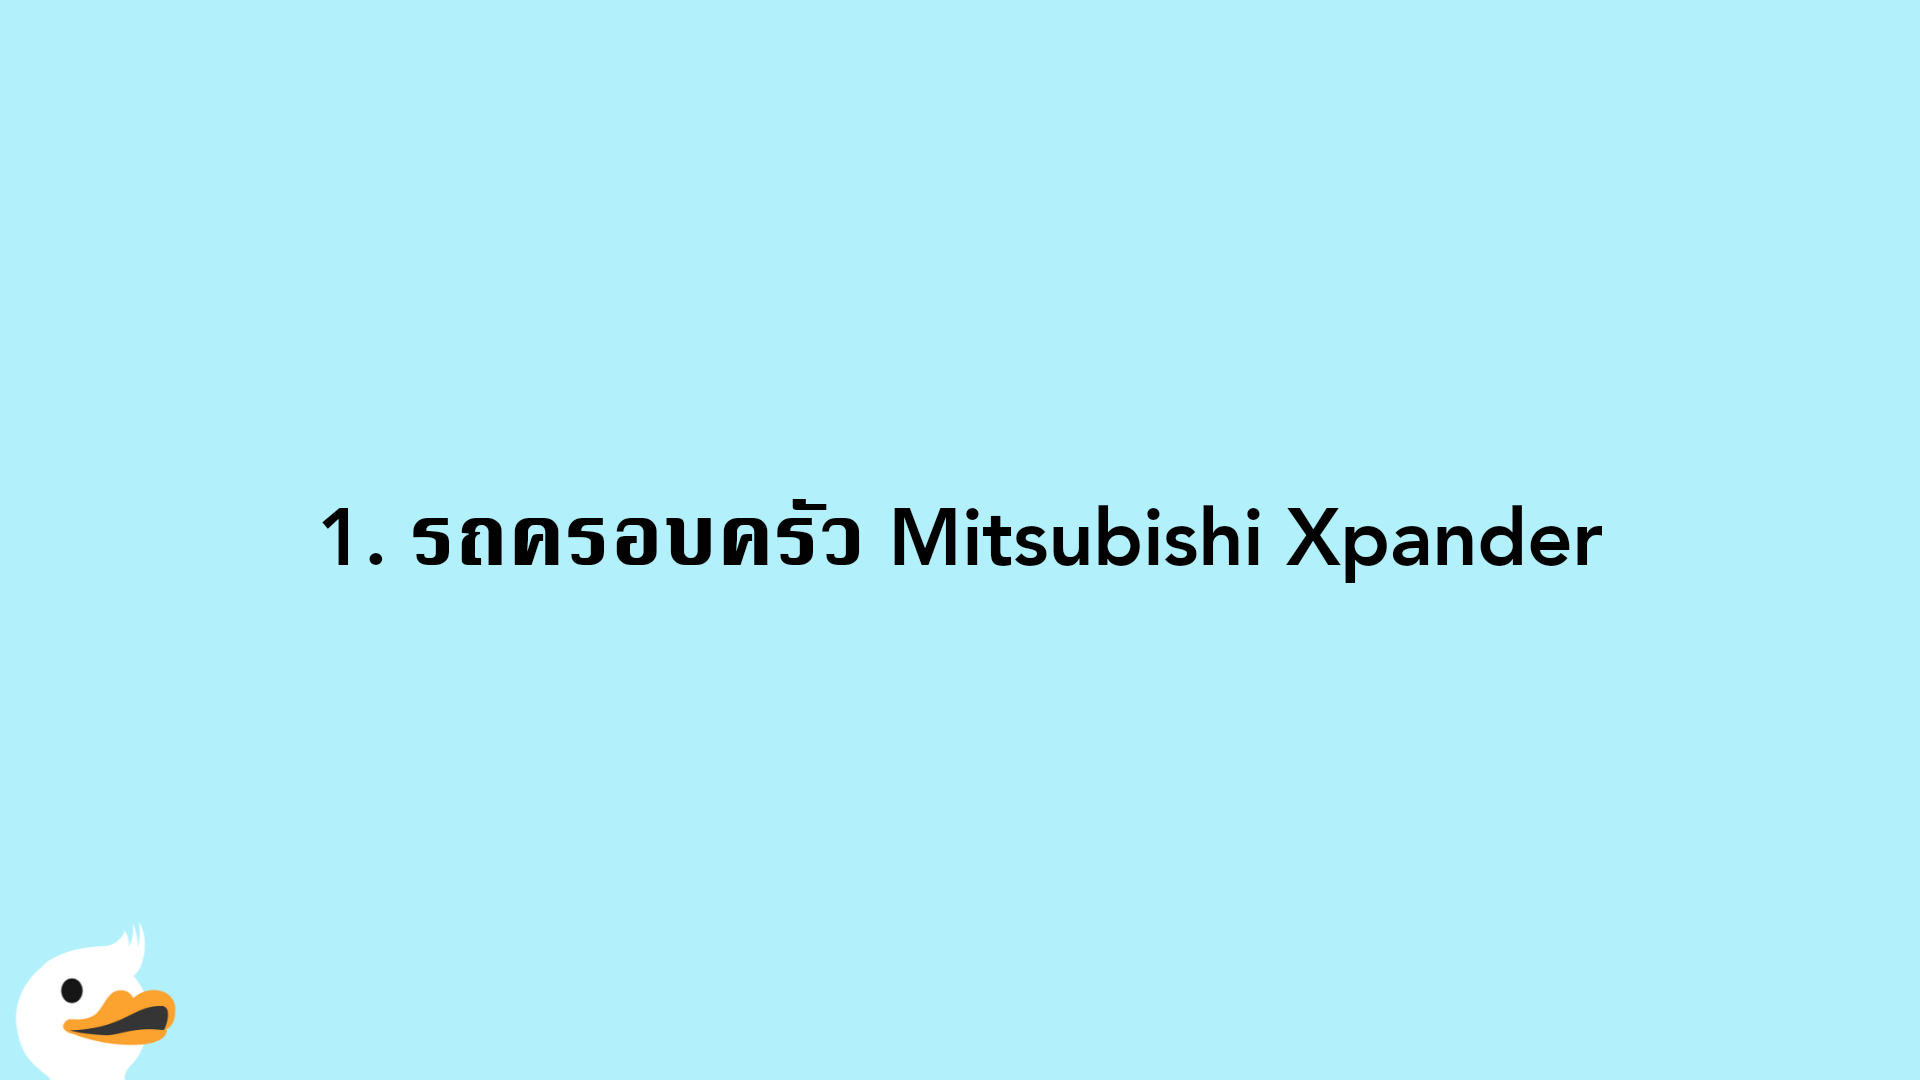 1. รถครอบครัว Mitsubishi Xpander